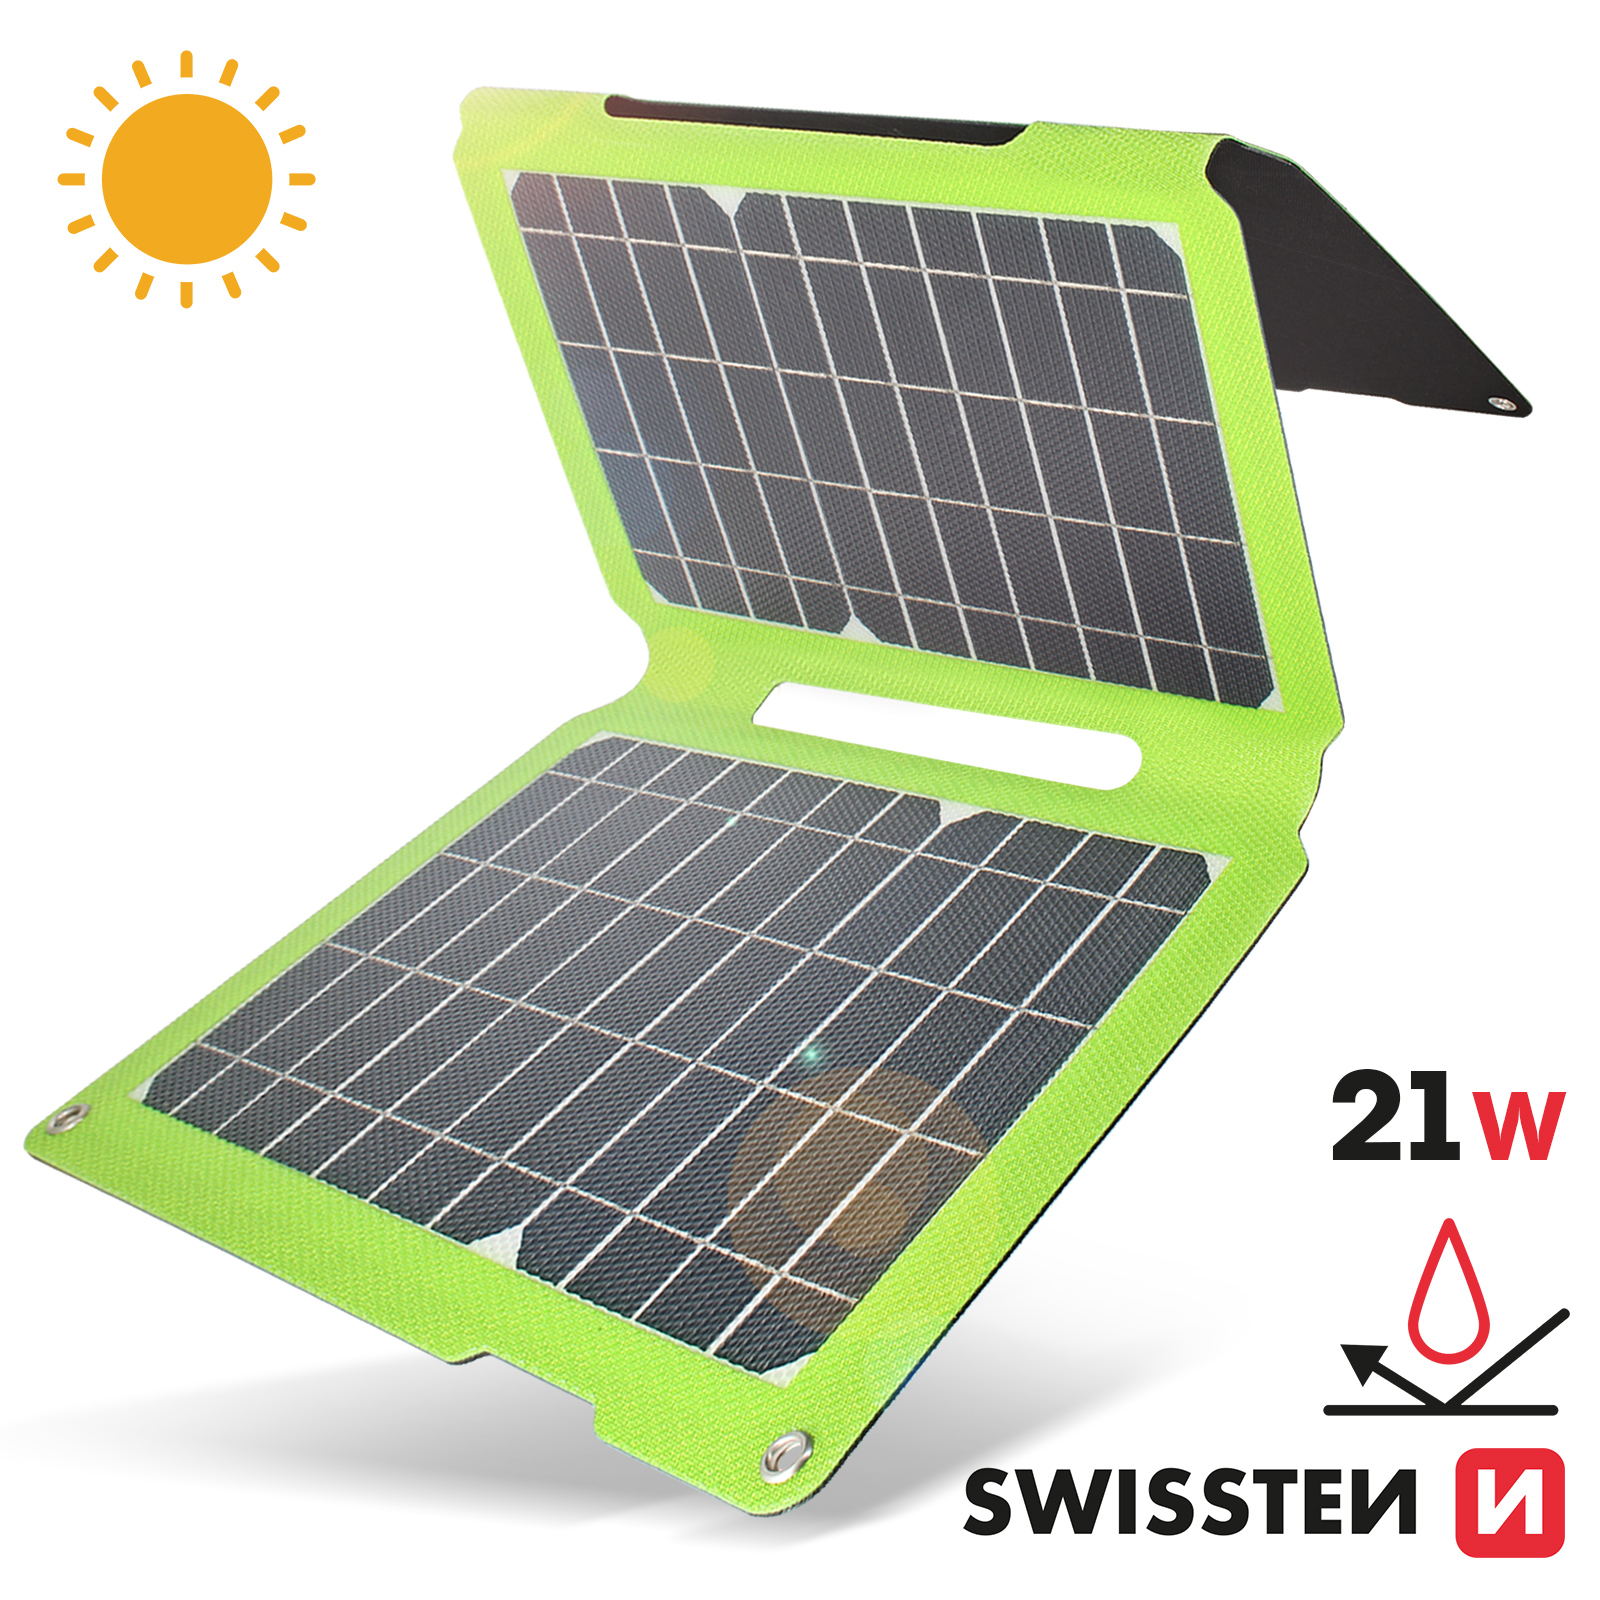 Caricatore solare USB e USB-C da 21W - Pannello solare per telefoni  Swissten verde - Italiano